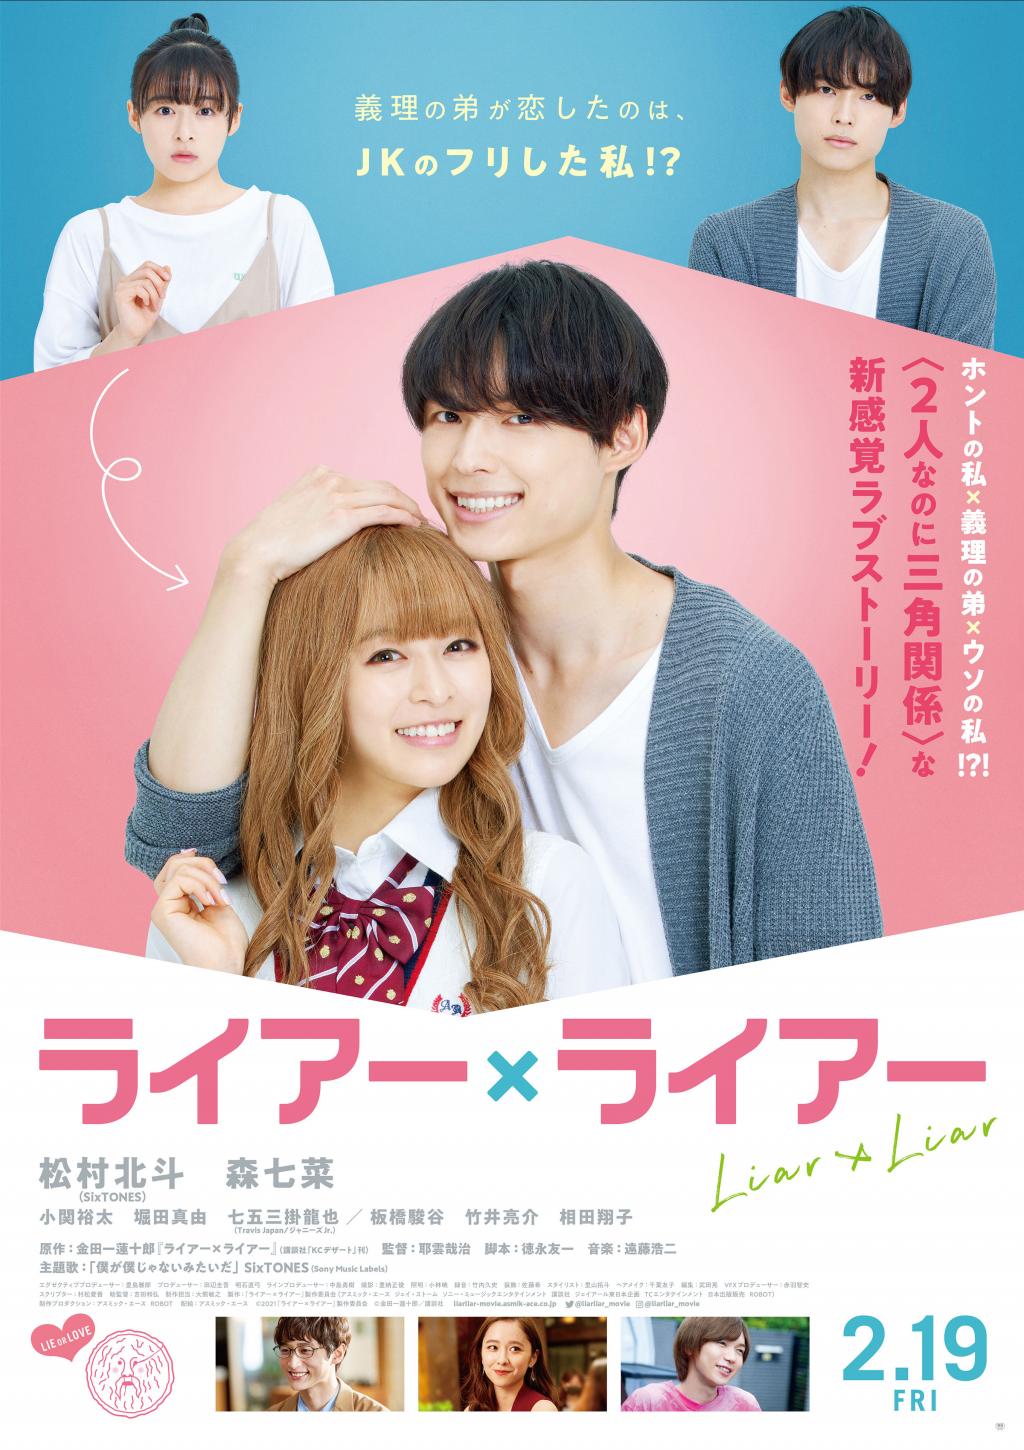 익스트림무비 - 일본 순정 로맨스 영화 [라이어 X 라이어] 메인 예고편 및 포스터